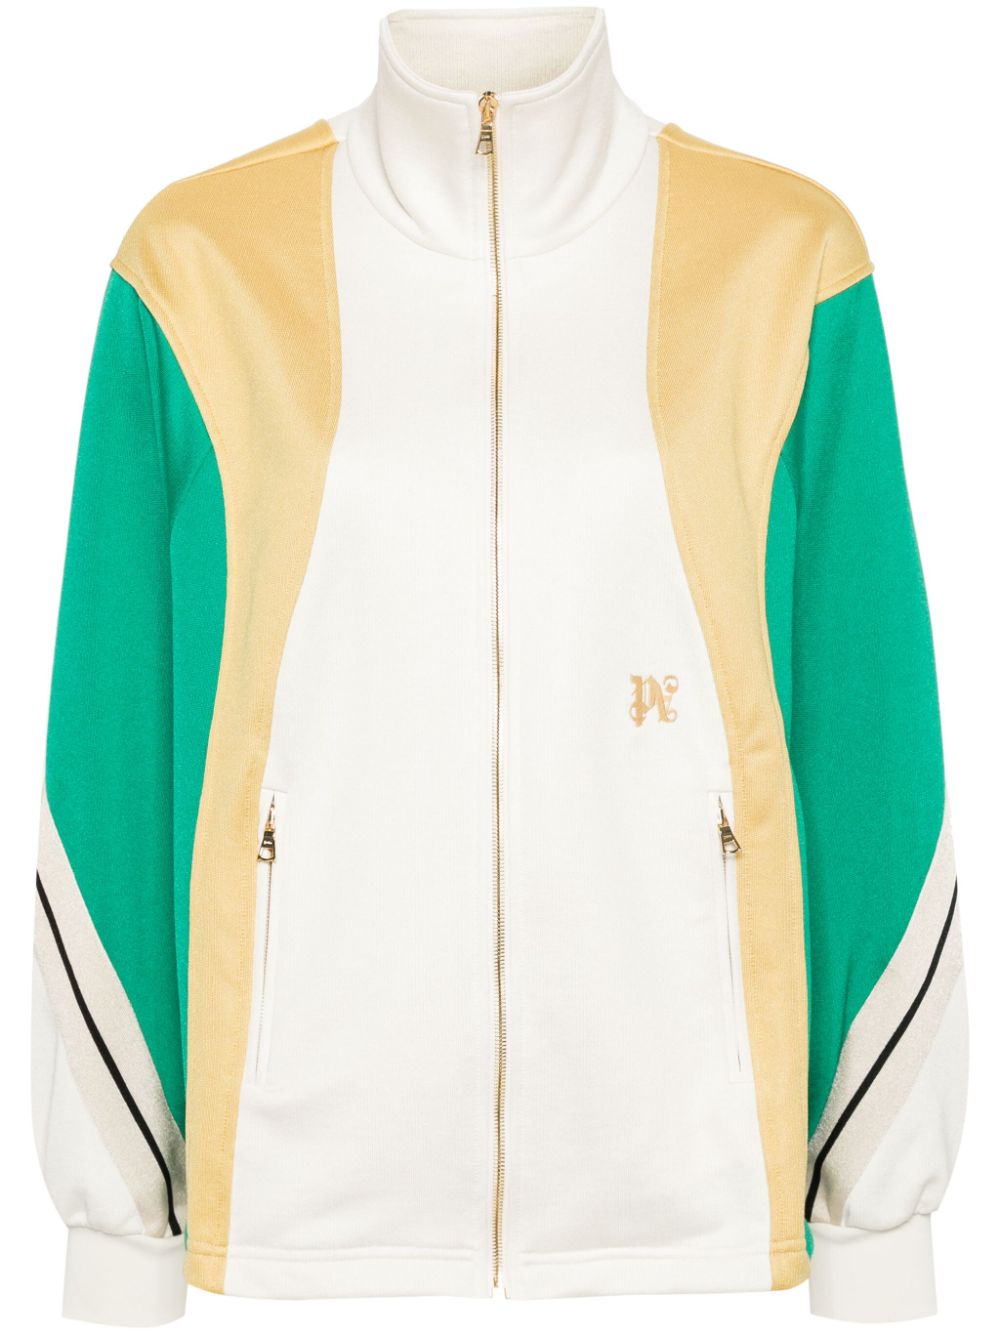 Colour-block track jacket<BR/><BR/><BR/>